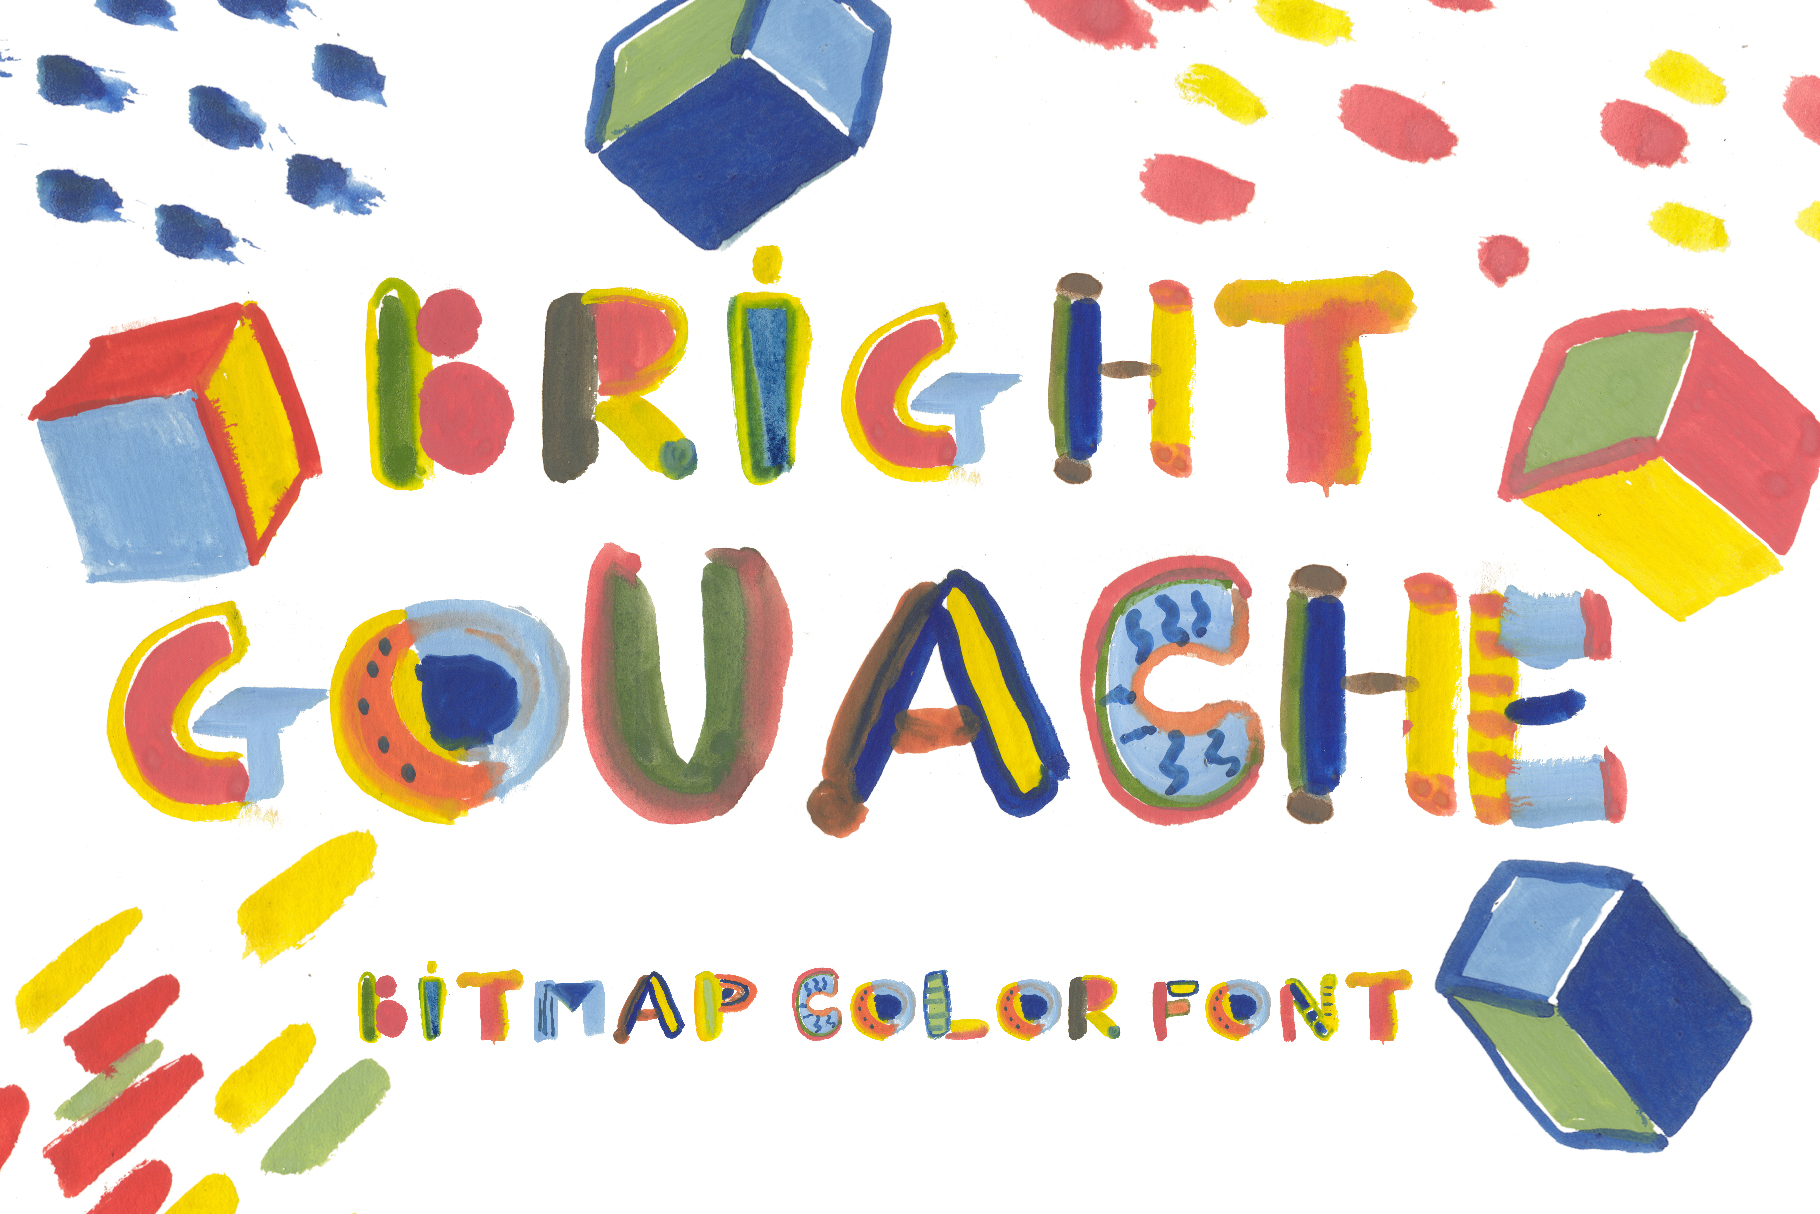 Bright Gouache Bitmap Color Font - cover image.